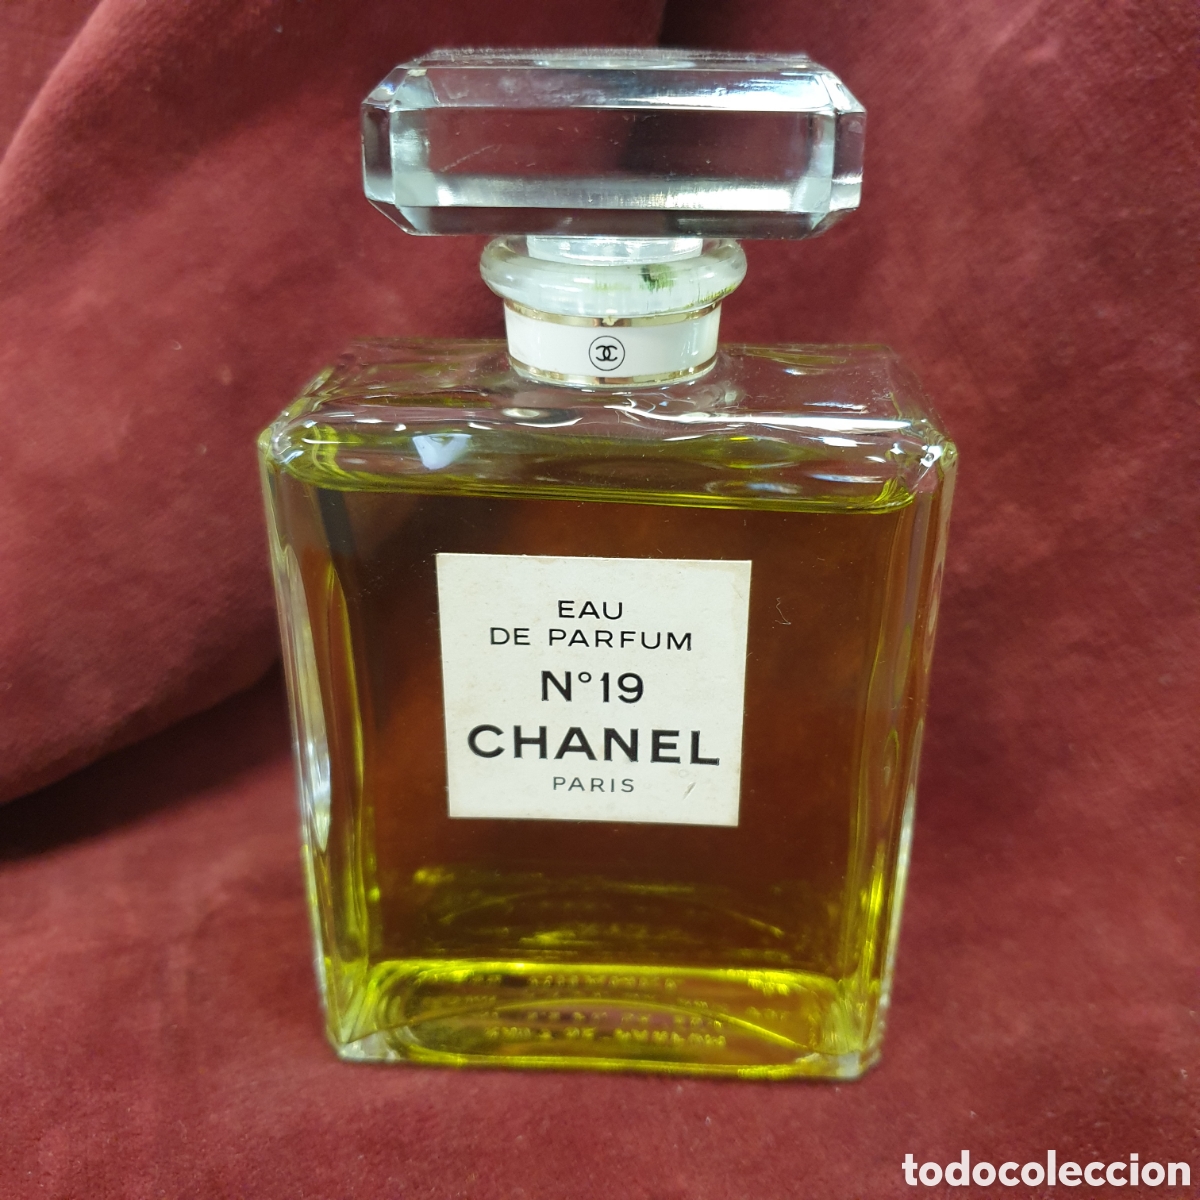 chanel No 19 eau de parfum 4 ml vintage miniature new